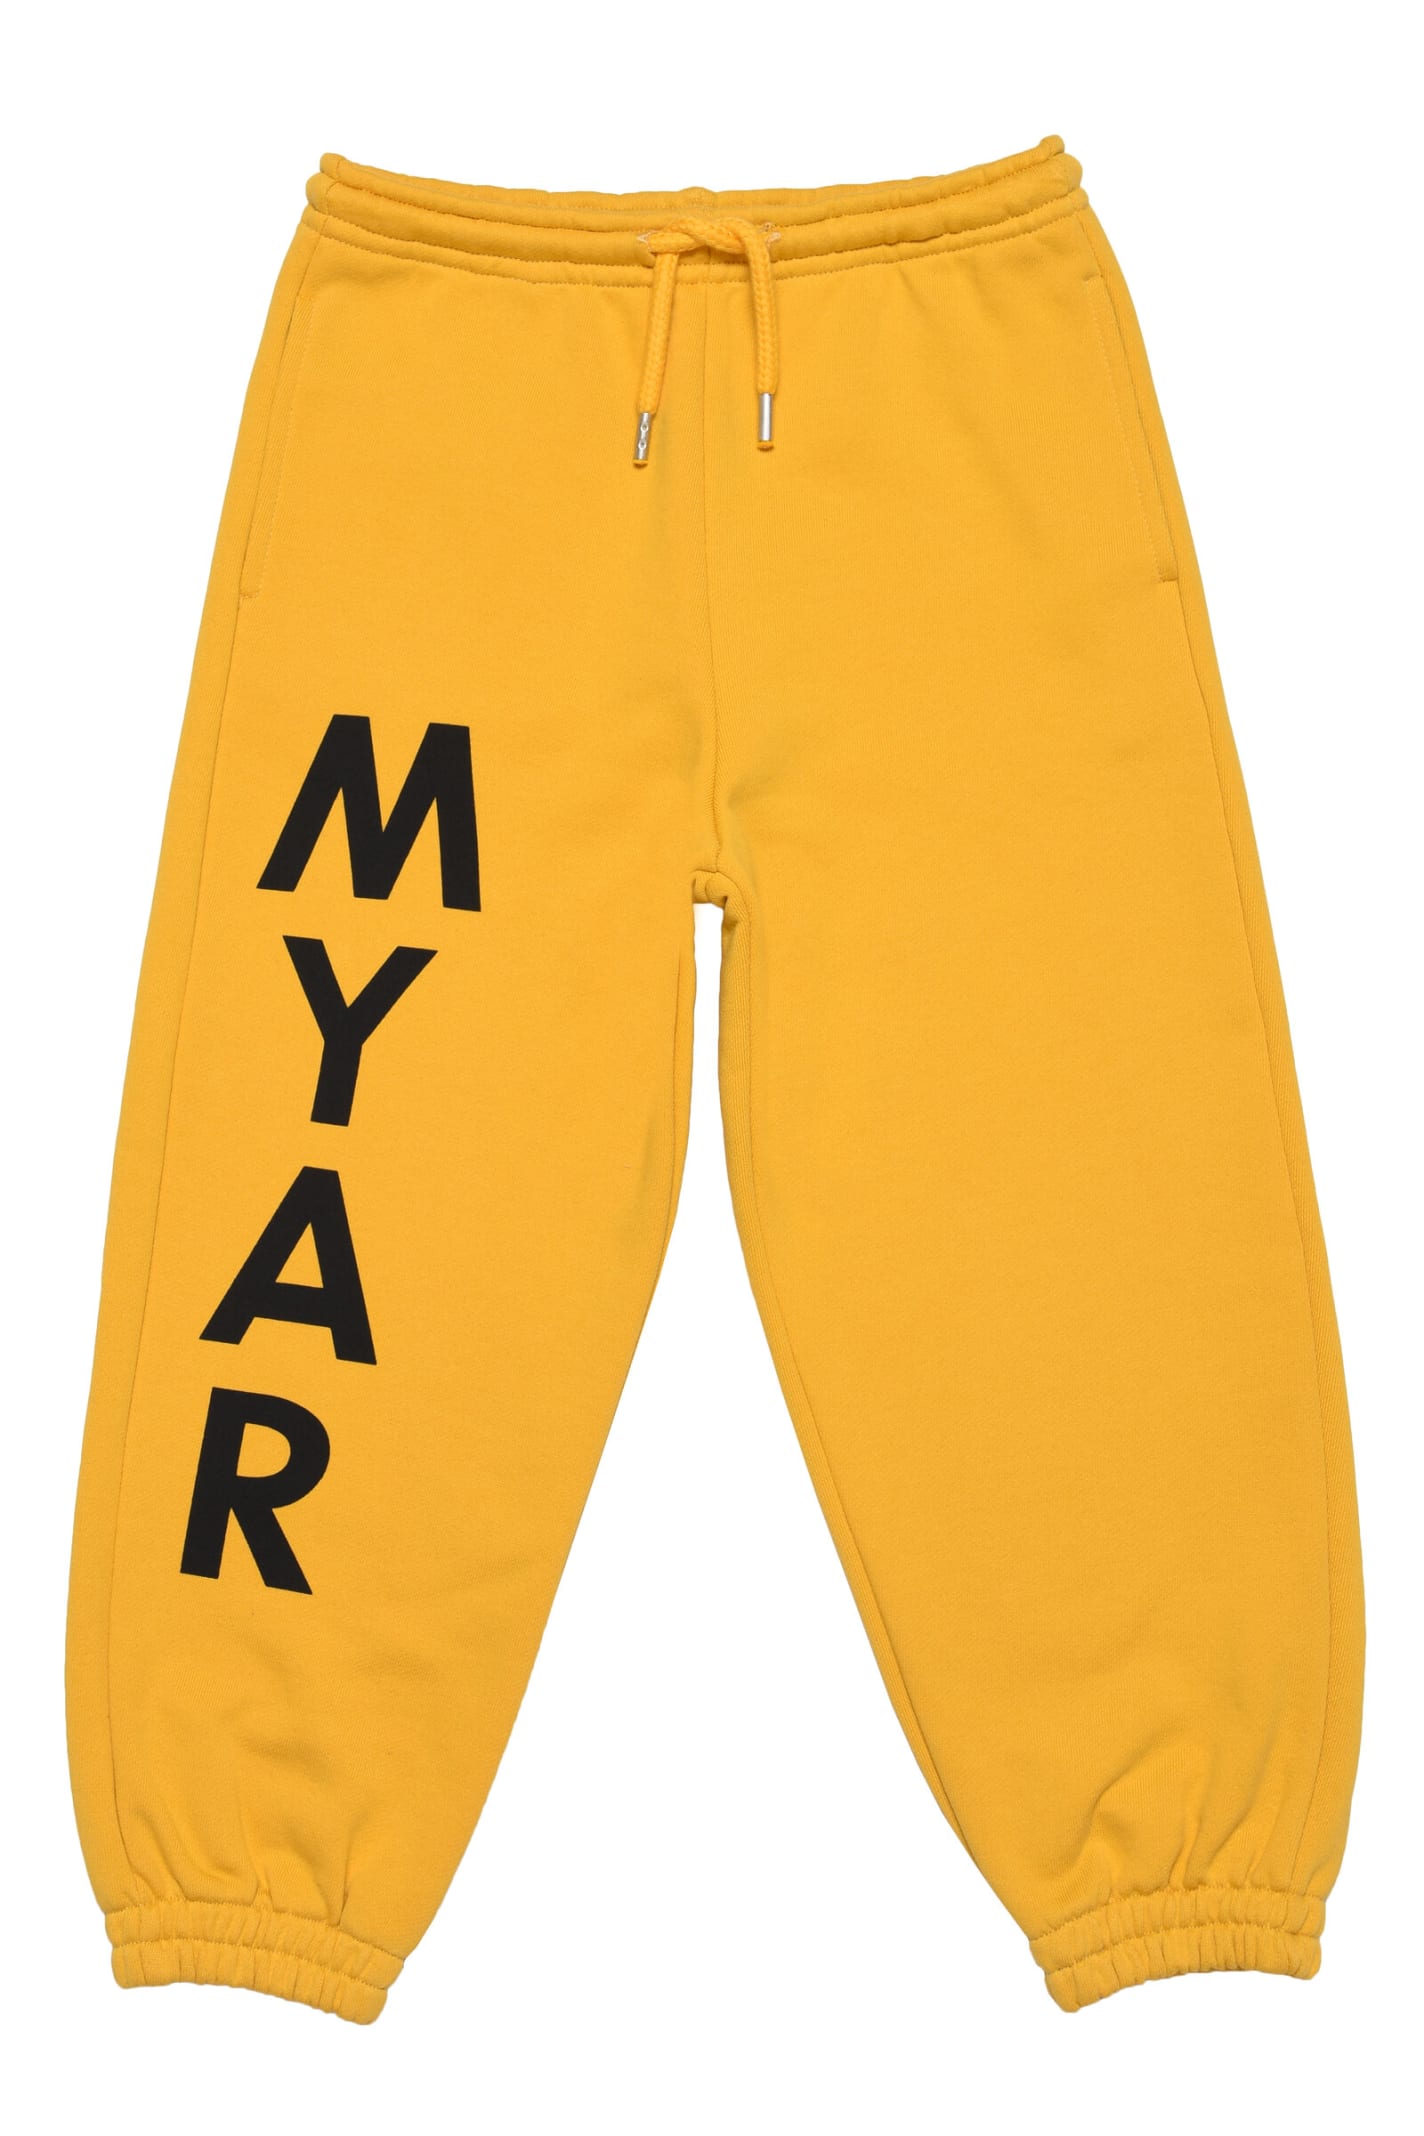 Myp5u Trousers Myar